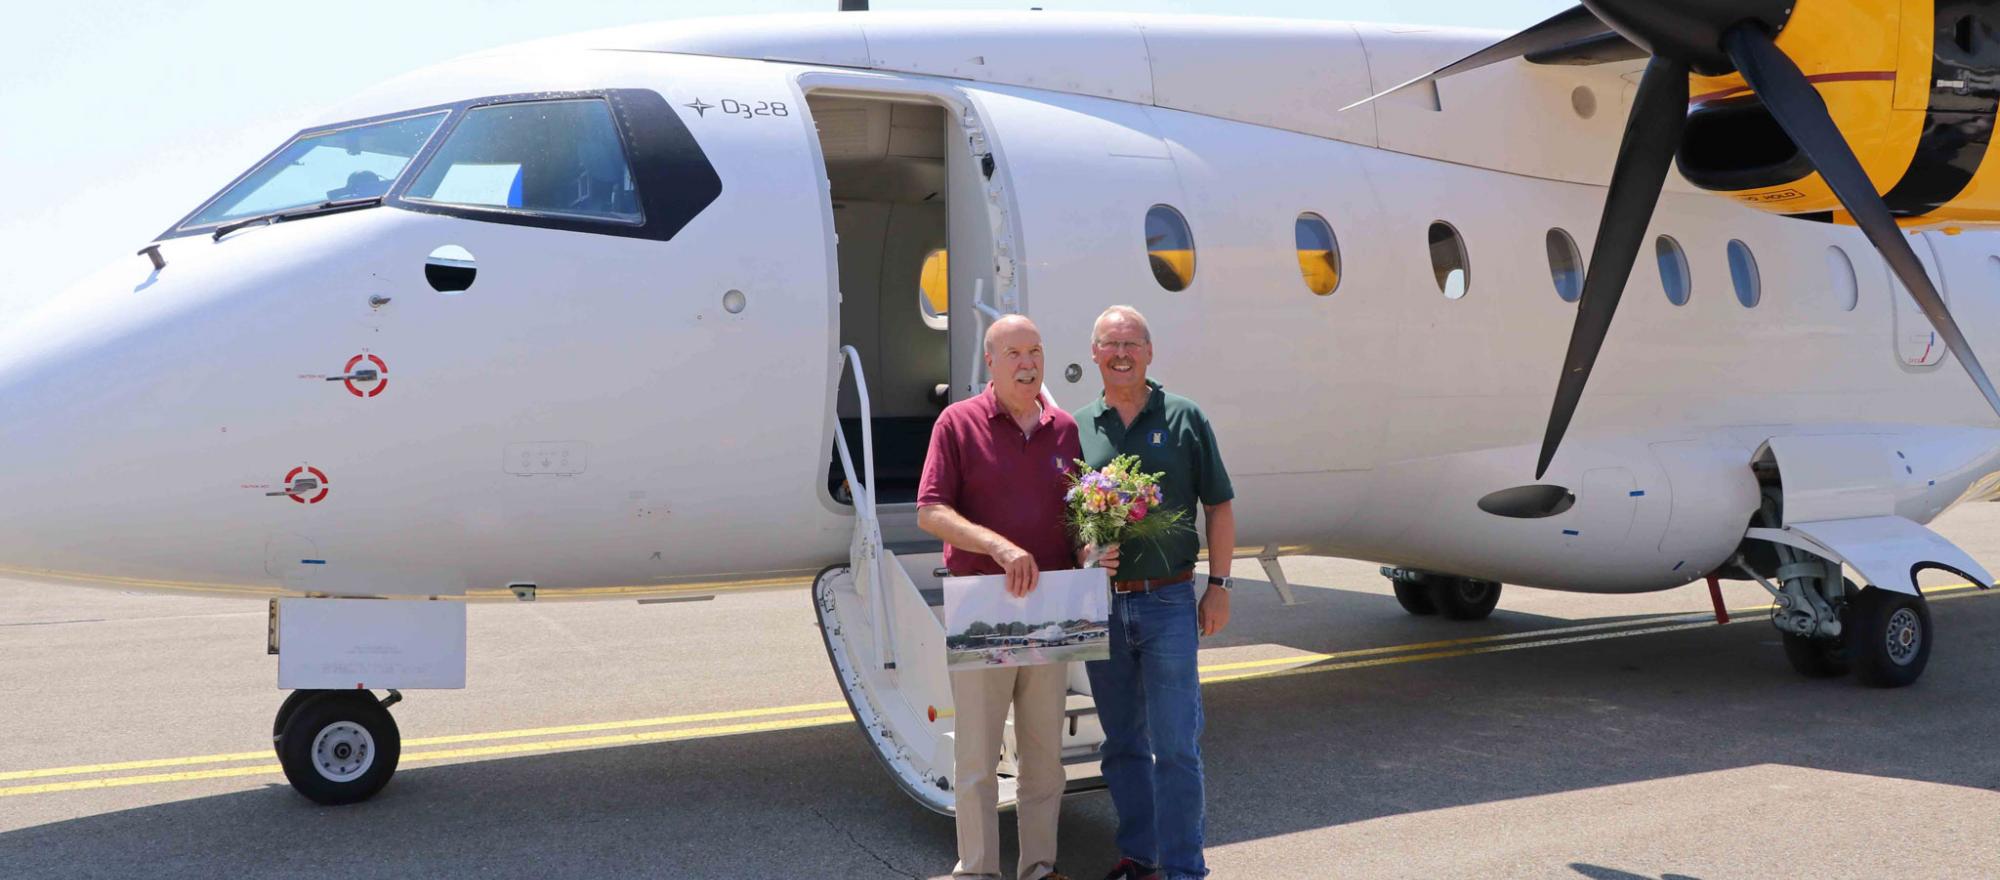 Weger and coworker near plane